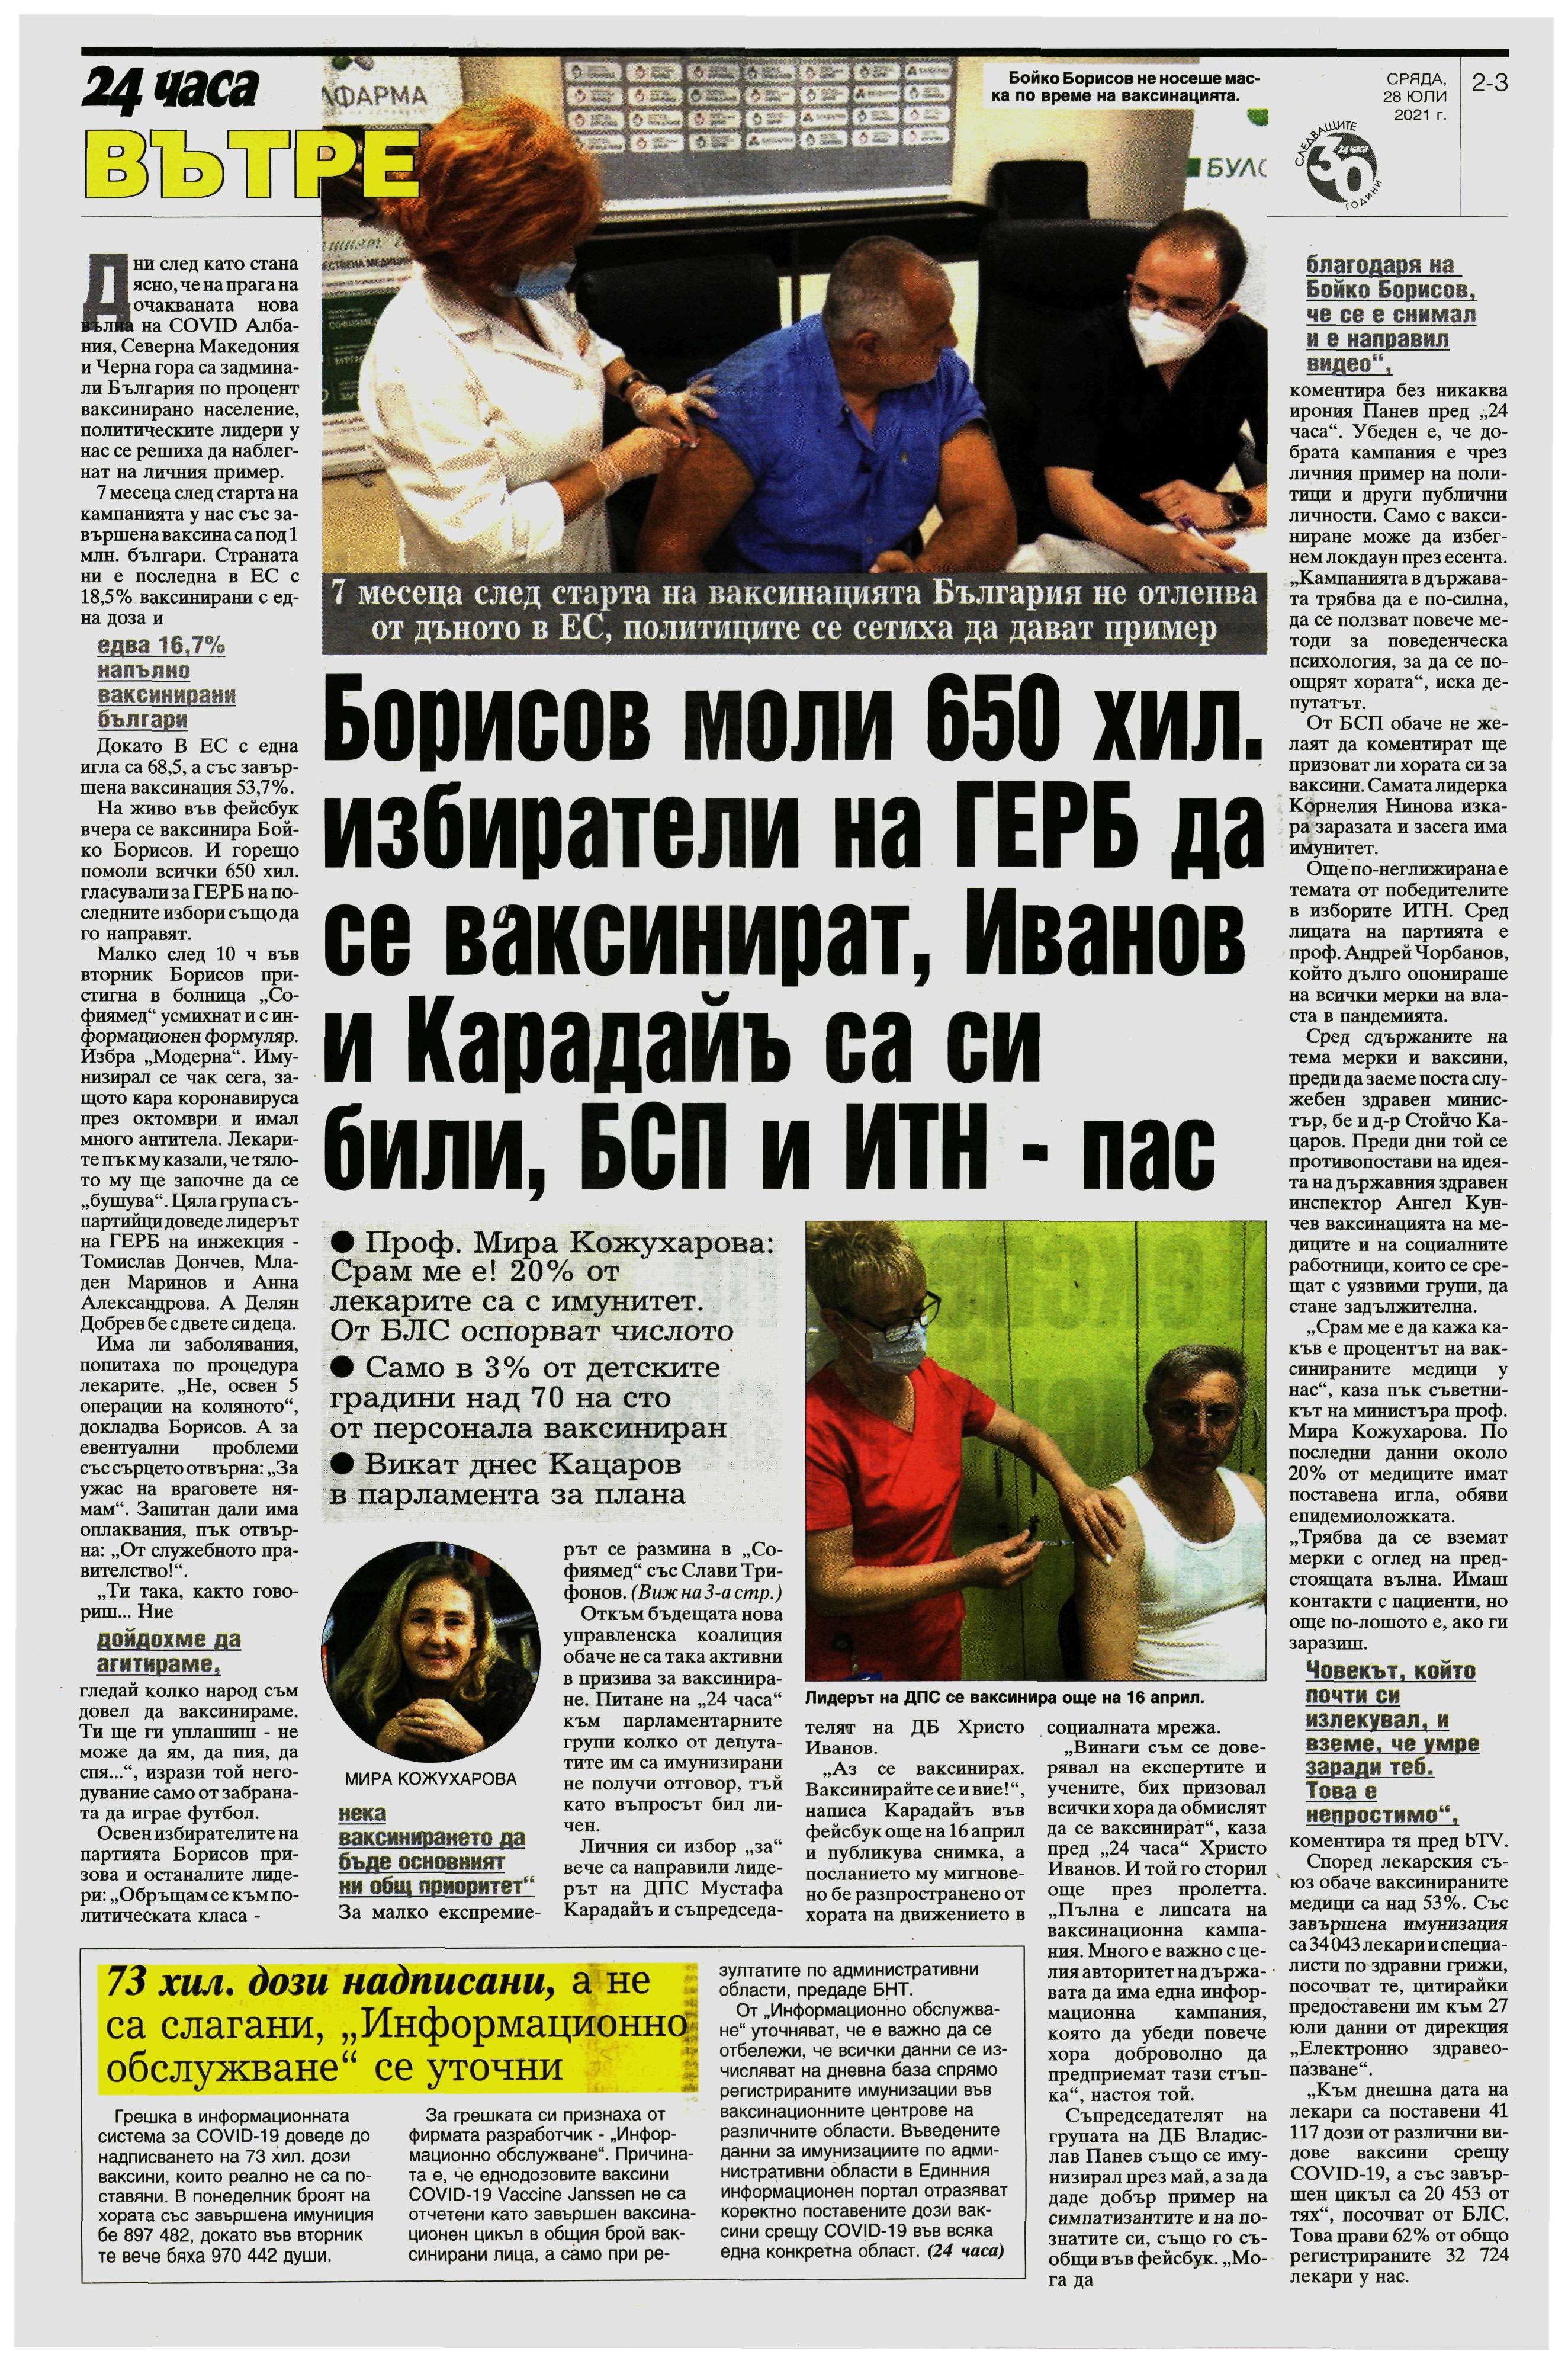 Борисов моли 650 хил. избиратели на ГЕРБ да се ваксинират, Иванов и Карадайъ са си били, БСП и ИТН - пас